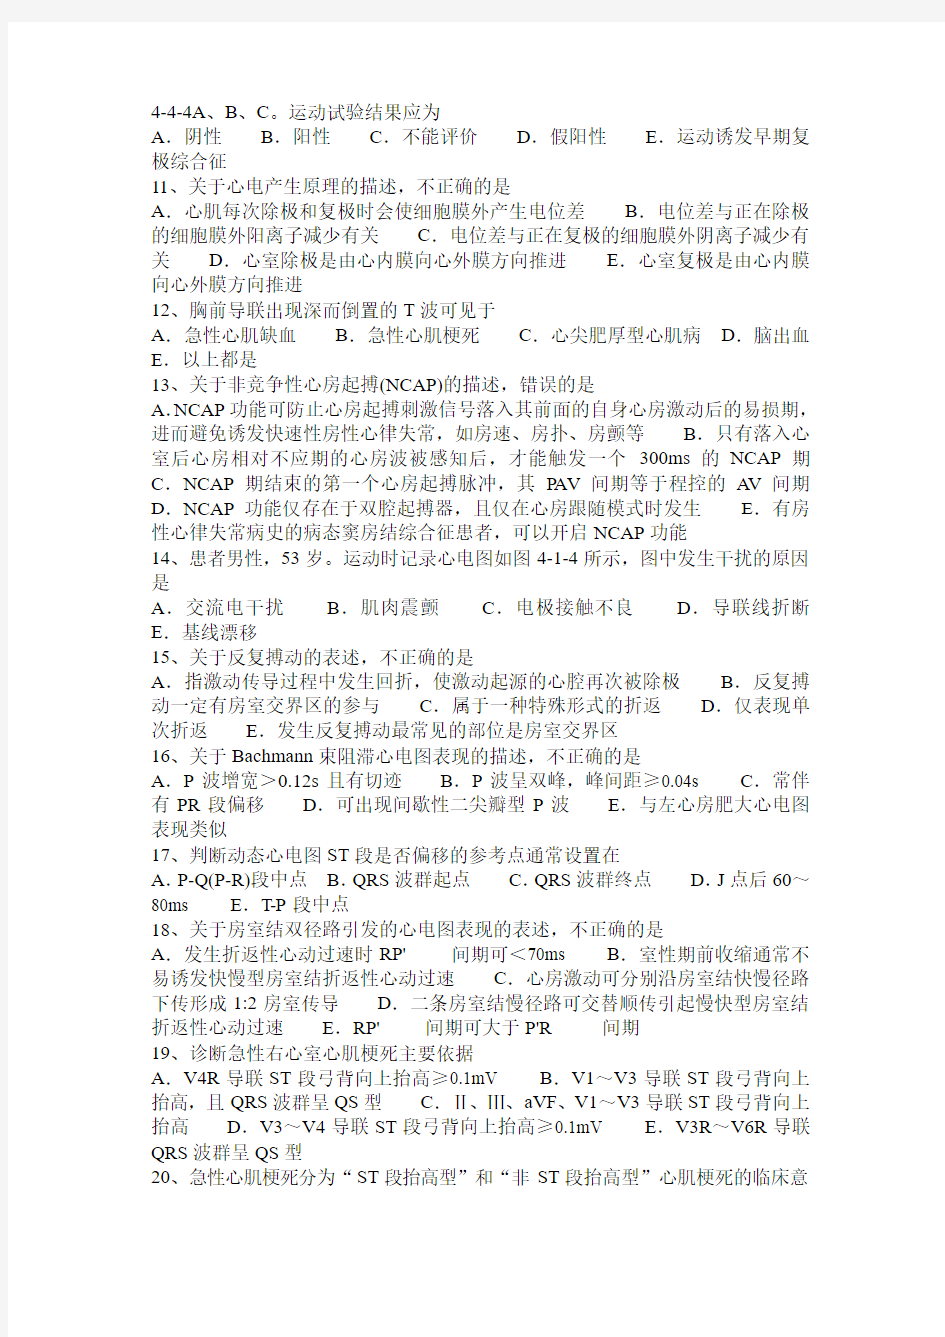 2016年下半年上海心电图技术主任技师(副主任技术)考试试题